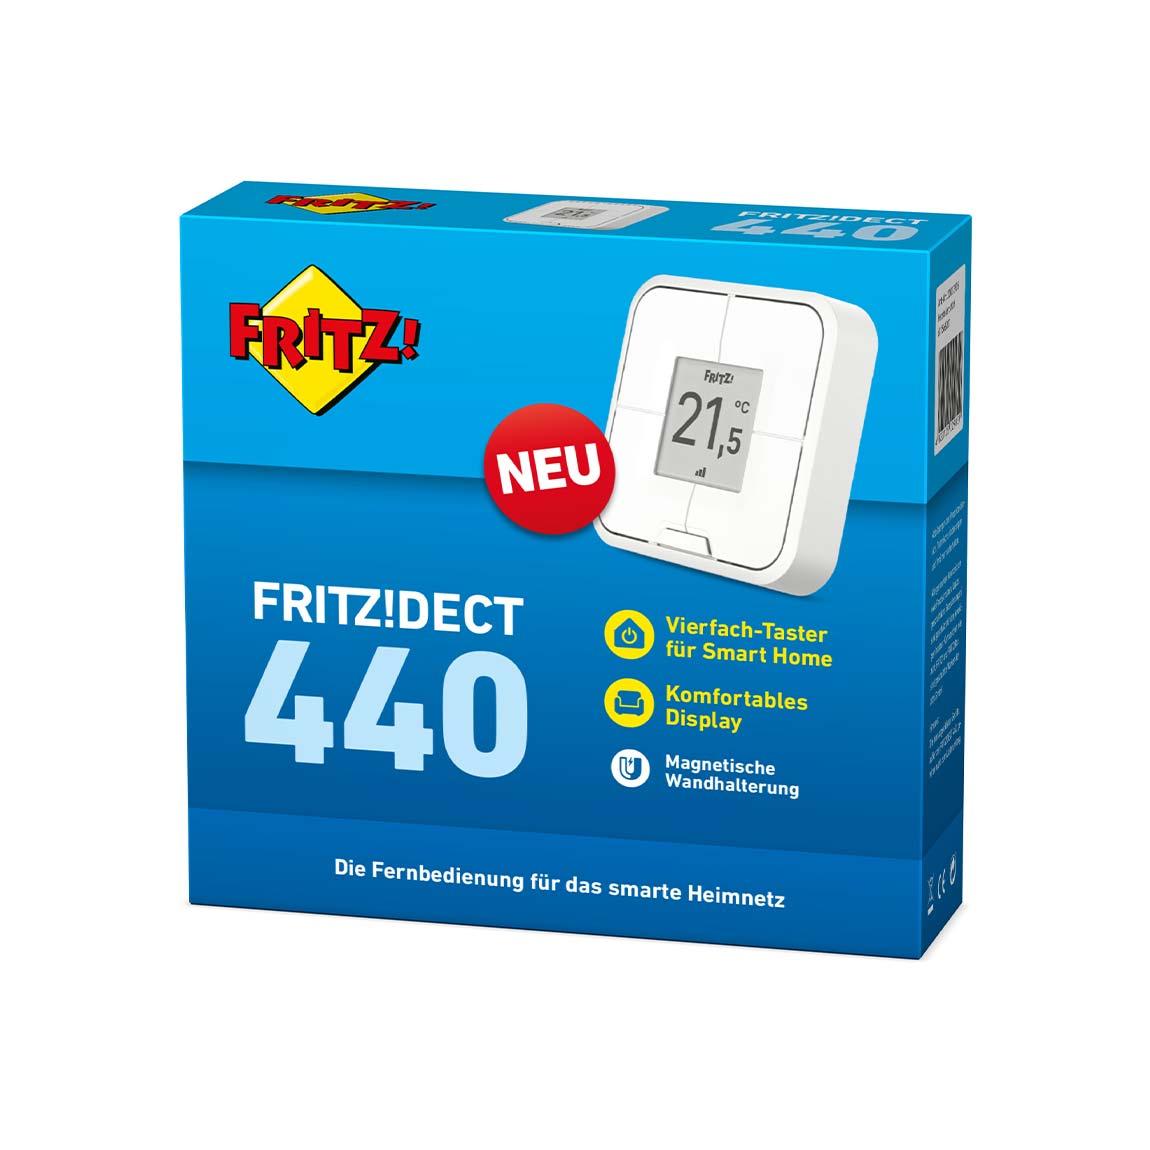 AVM FRITZ!DECT 440 Vierfach-Taster Verpackung